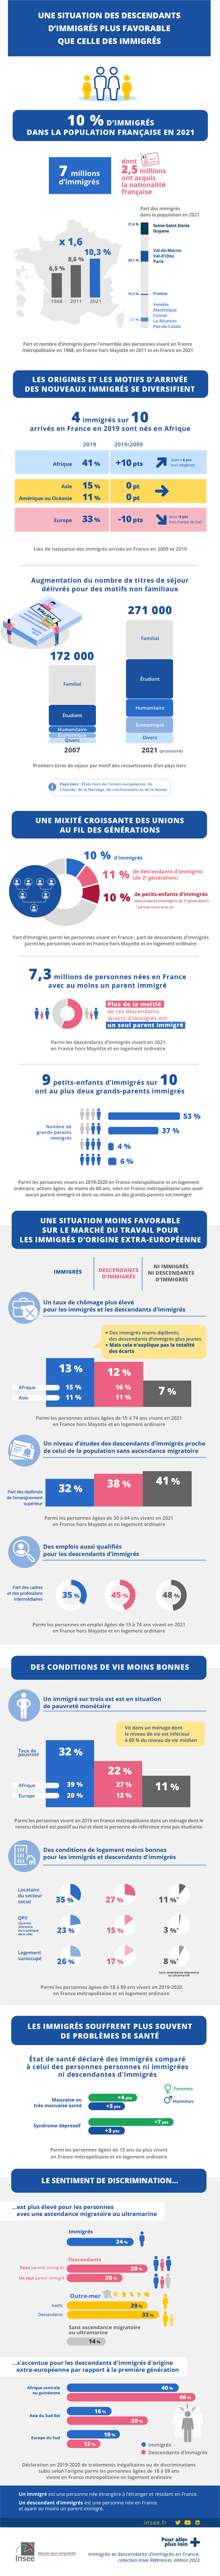 Insee - Une situation des descendants d’immigrés plus favorable que celle des immigrés